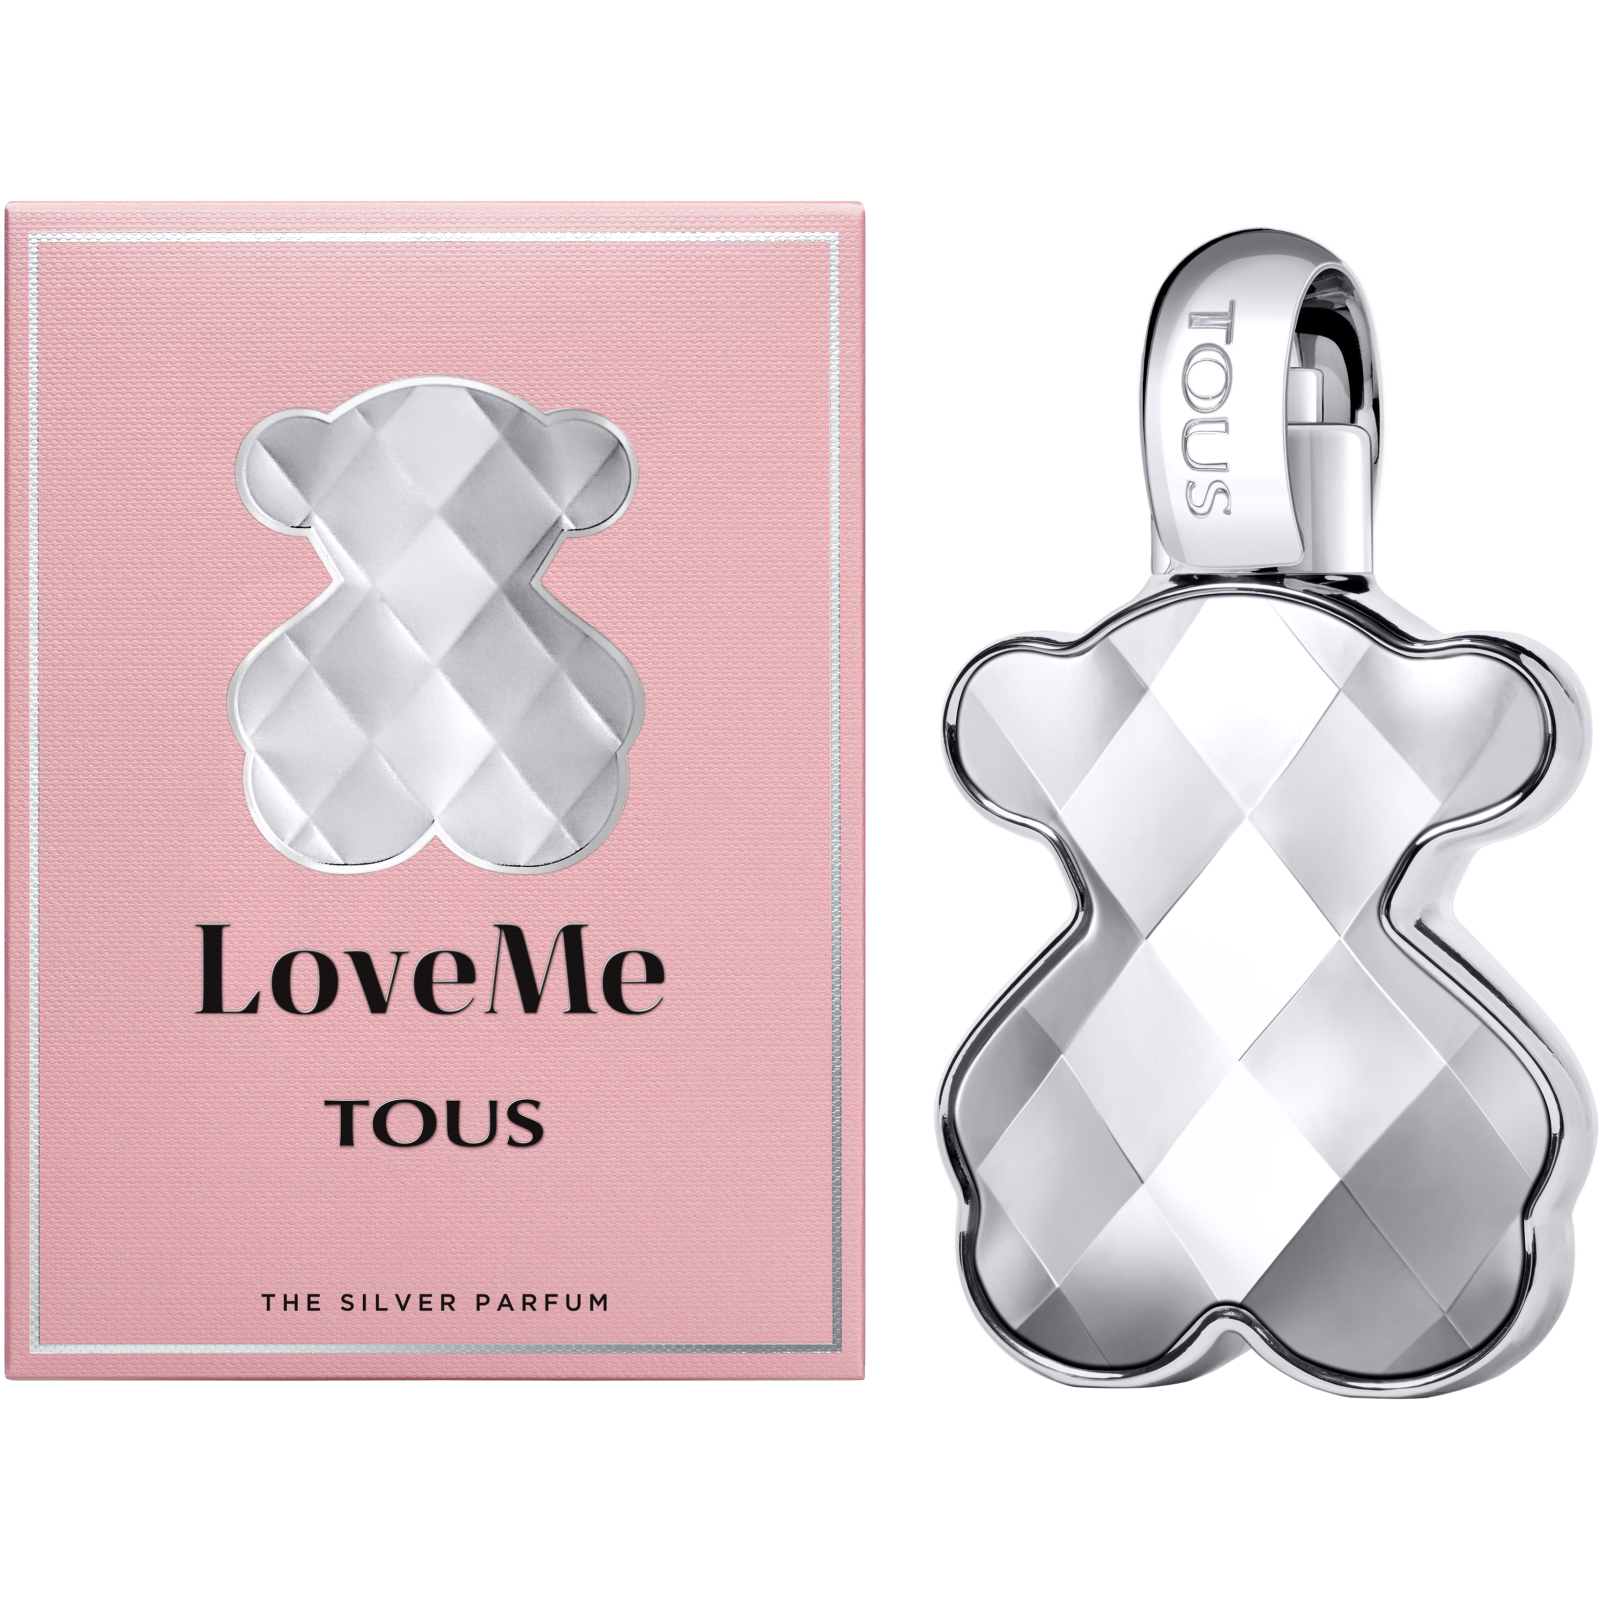 Парфюмированная вода Tous LoveMe The Silver Parfum 30 мл (8436550509861) изображение 3